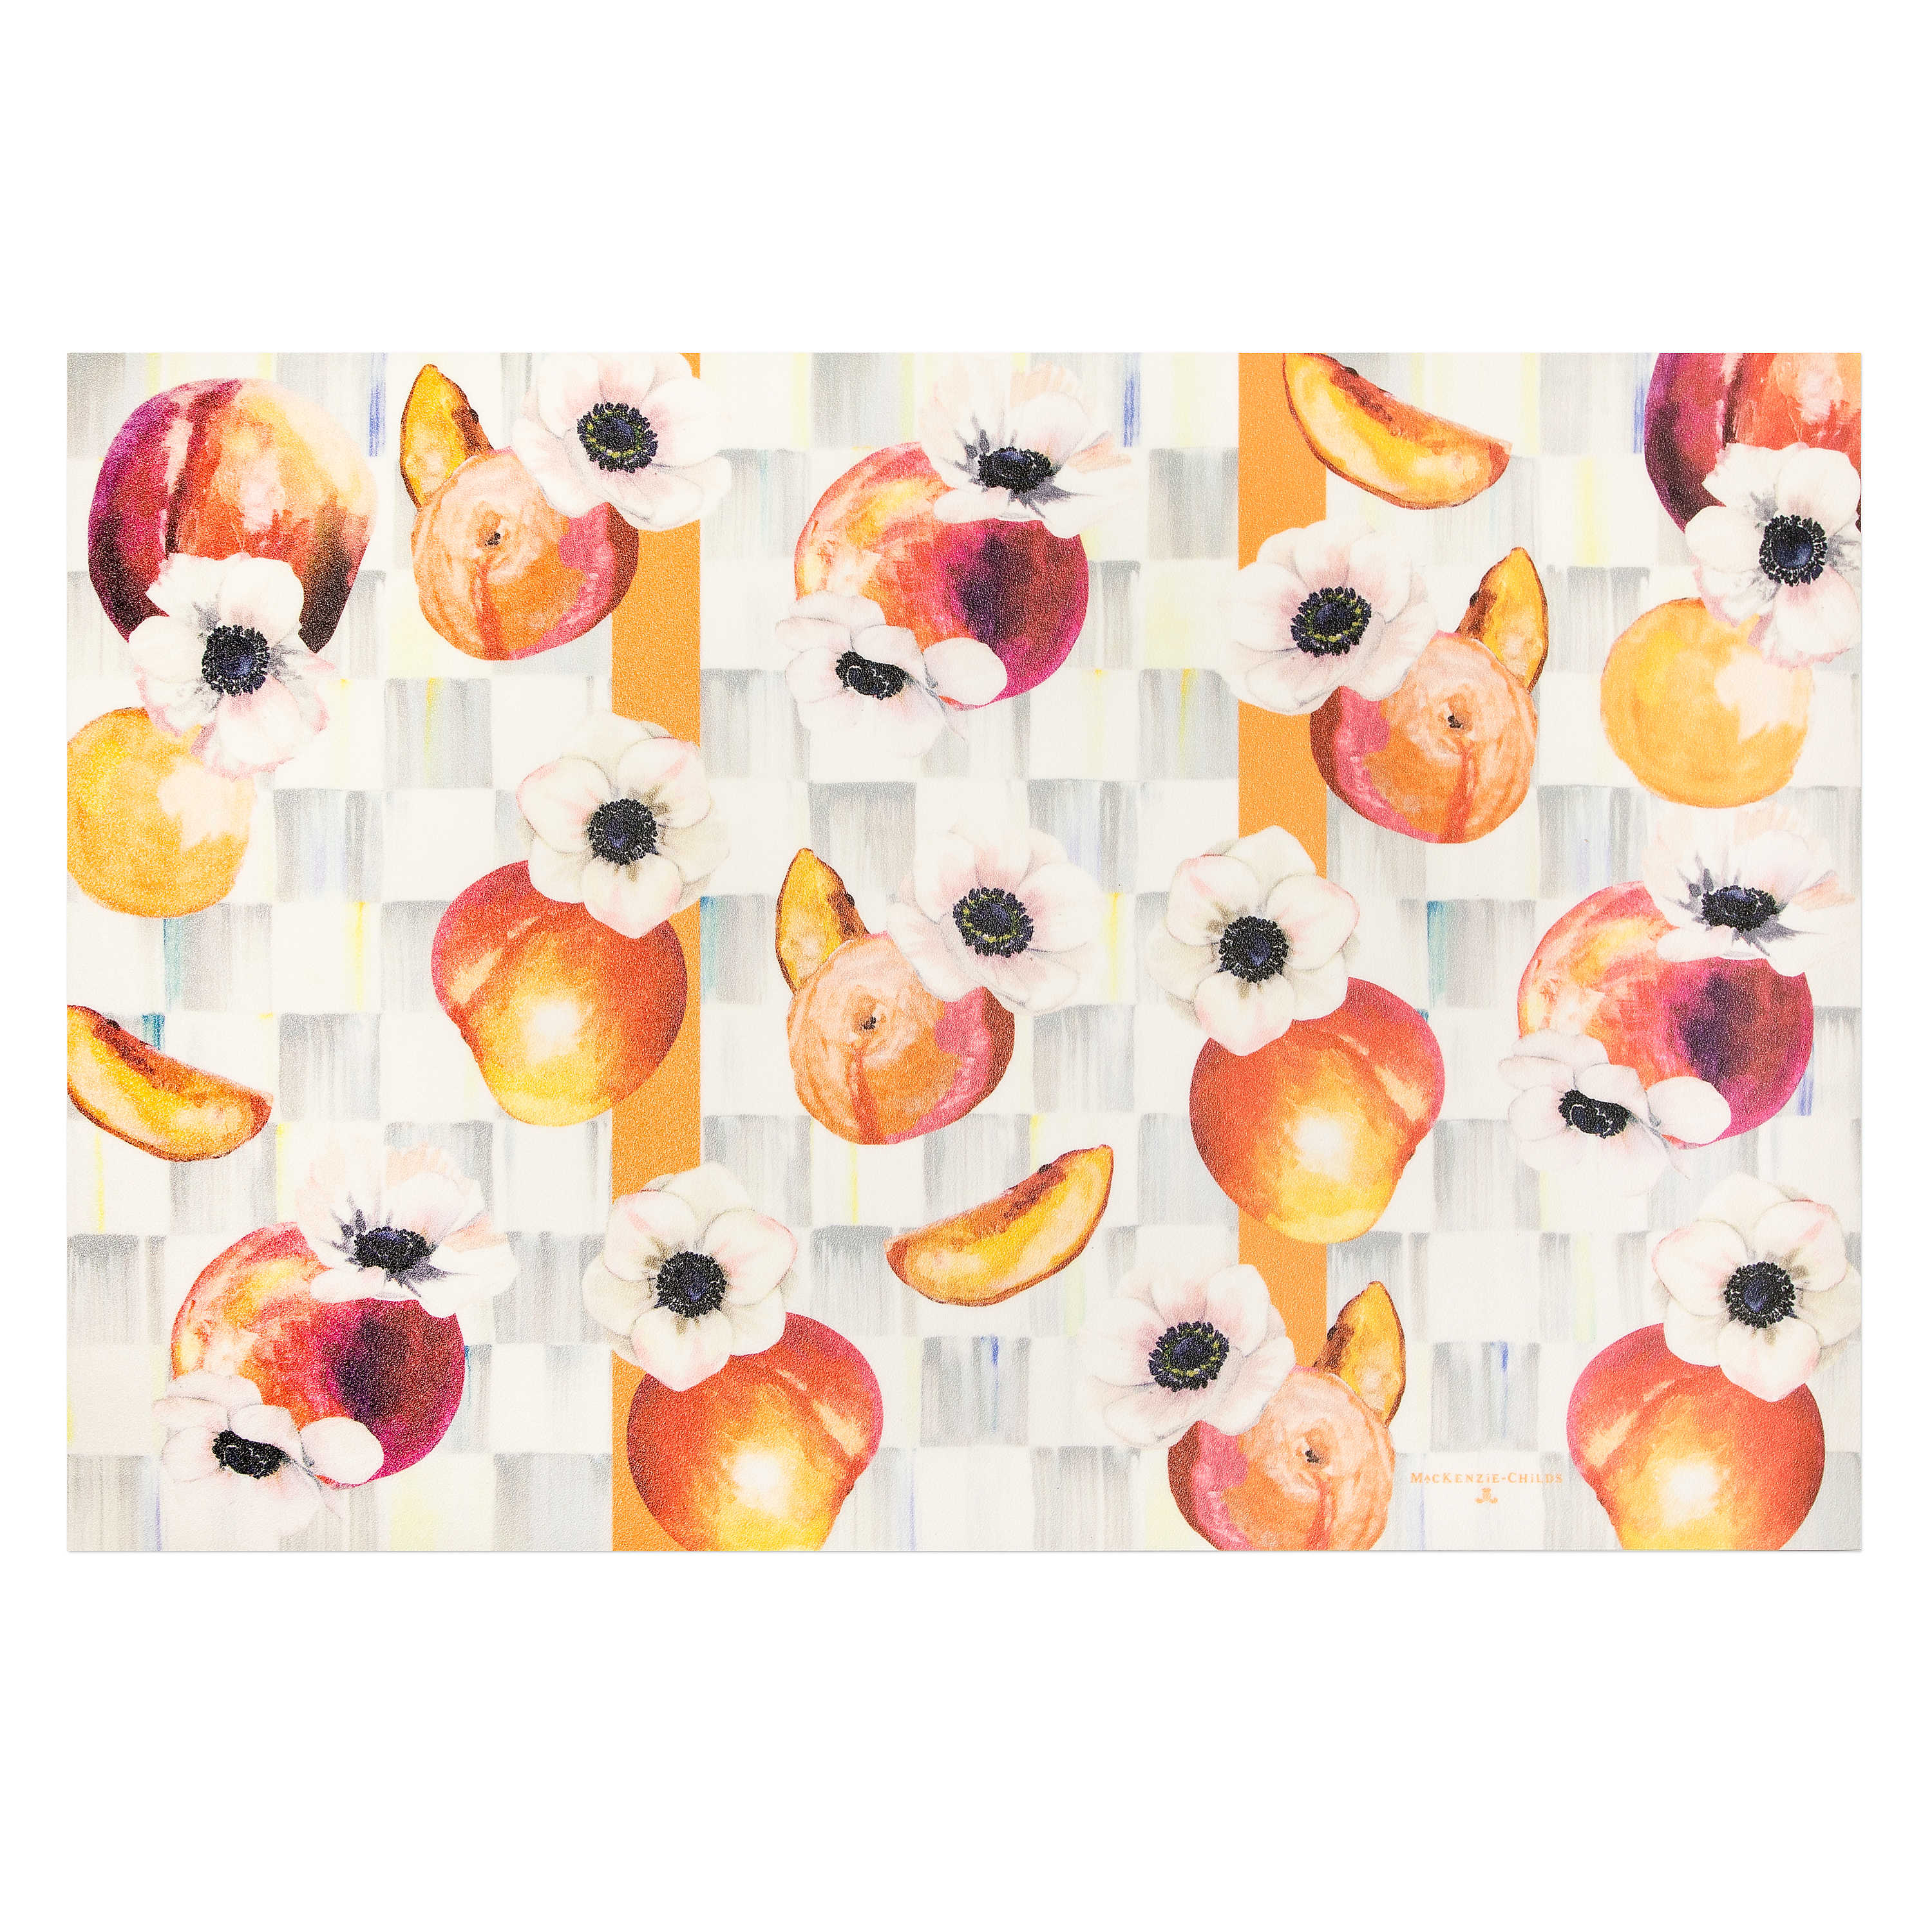 Peaches & Anemones Floor Mat - 2%27 x 3%27 mackenzie-childs Panama 0